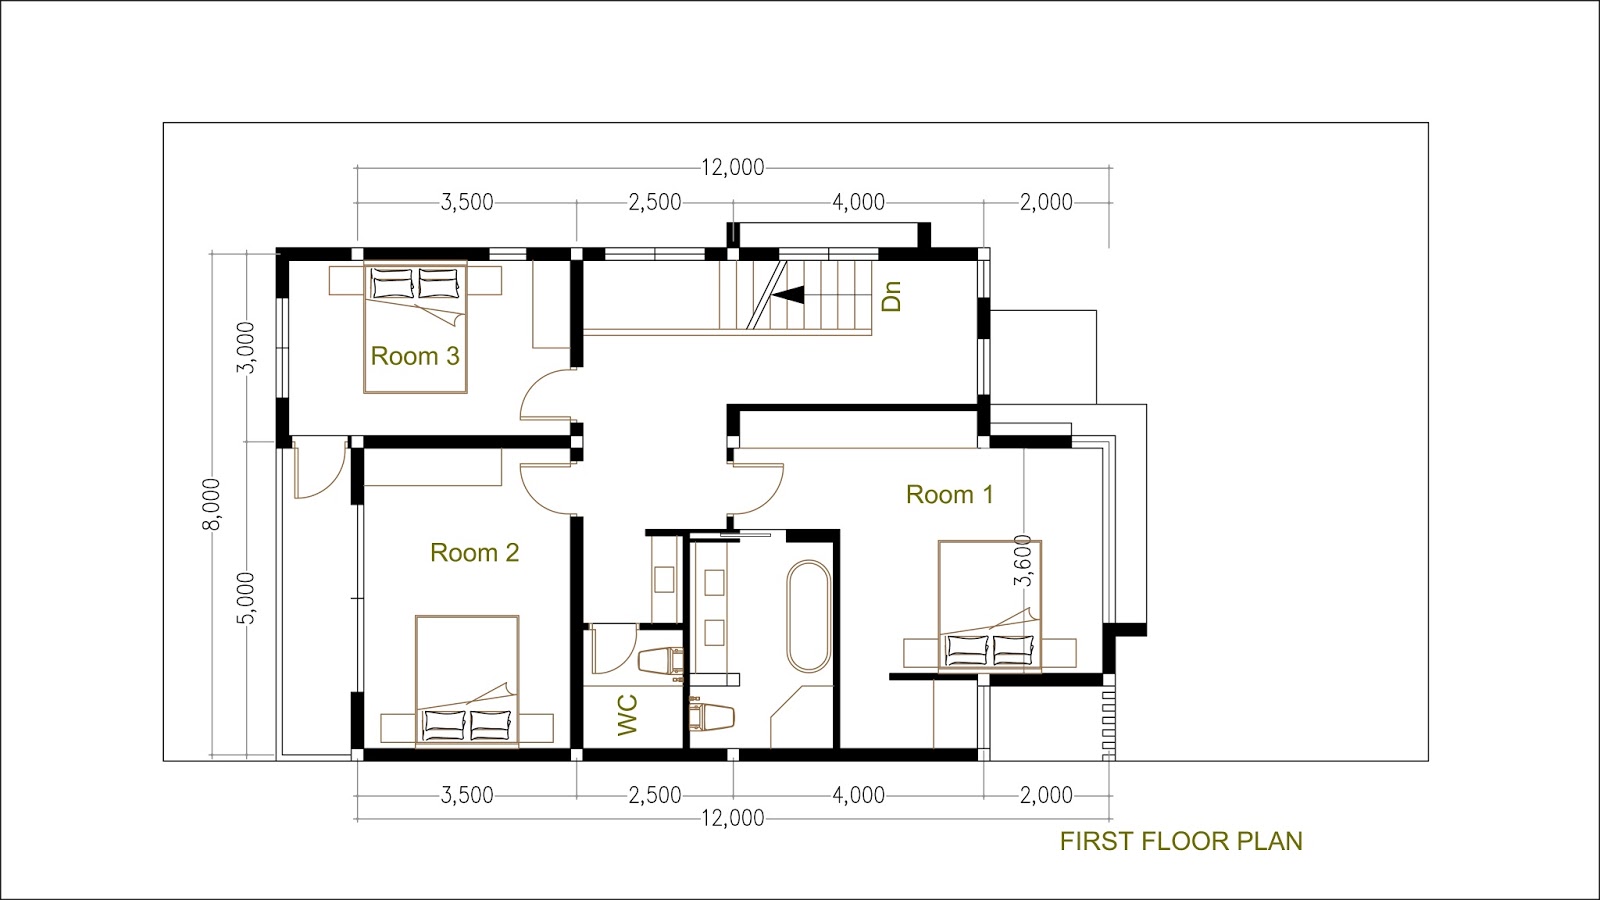 SketchUp Modern Home  Plan  Size  8x12m Samphoas House  Plan 